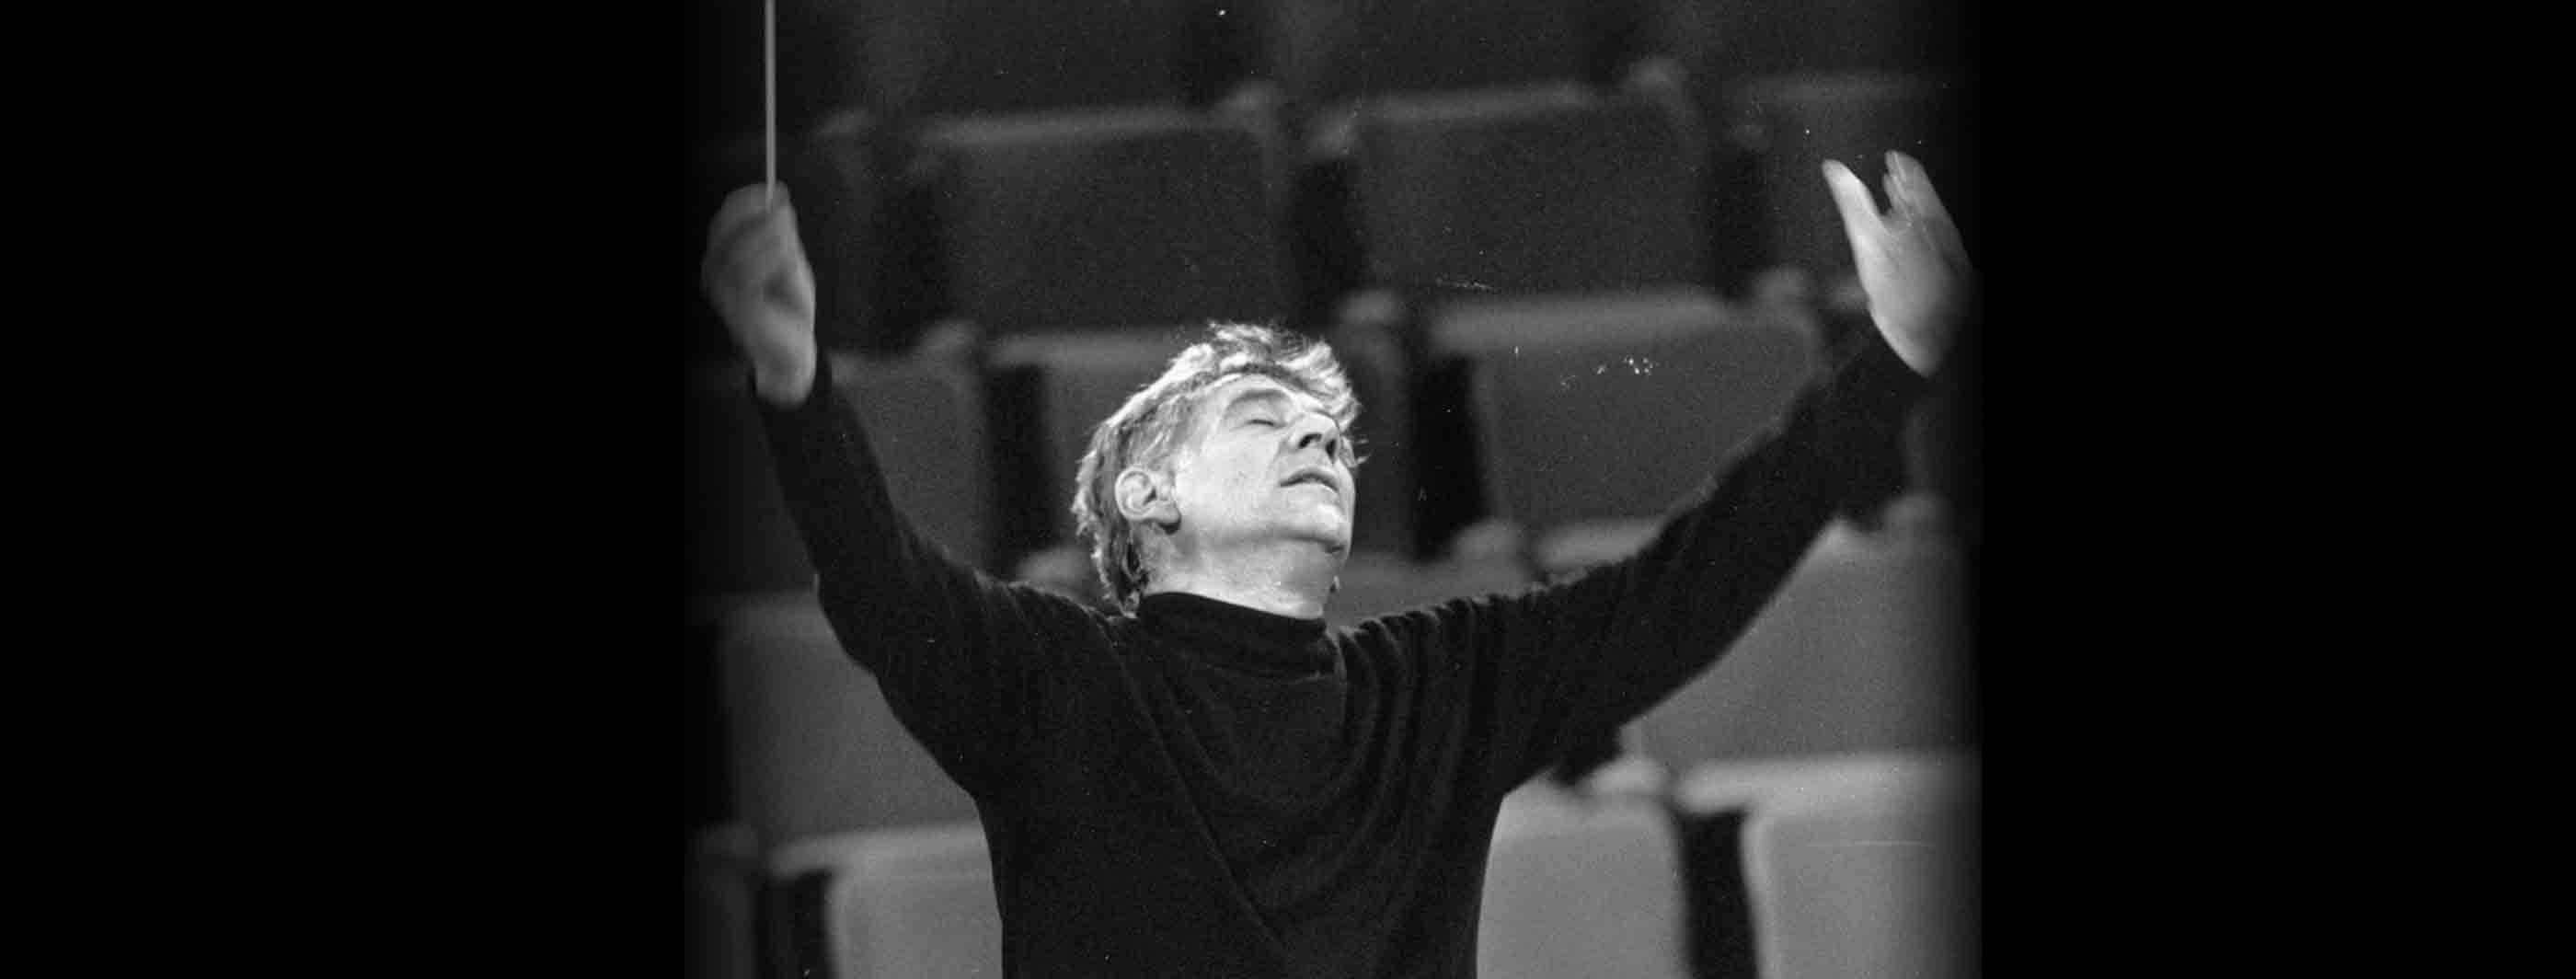 Leonard Bernstein conducting, December 8, 1966. (Credit: Erich Auerbach/Getty Images)